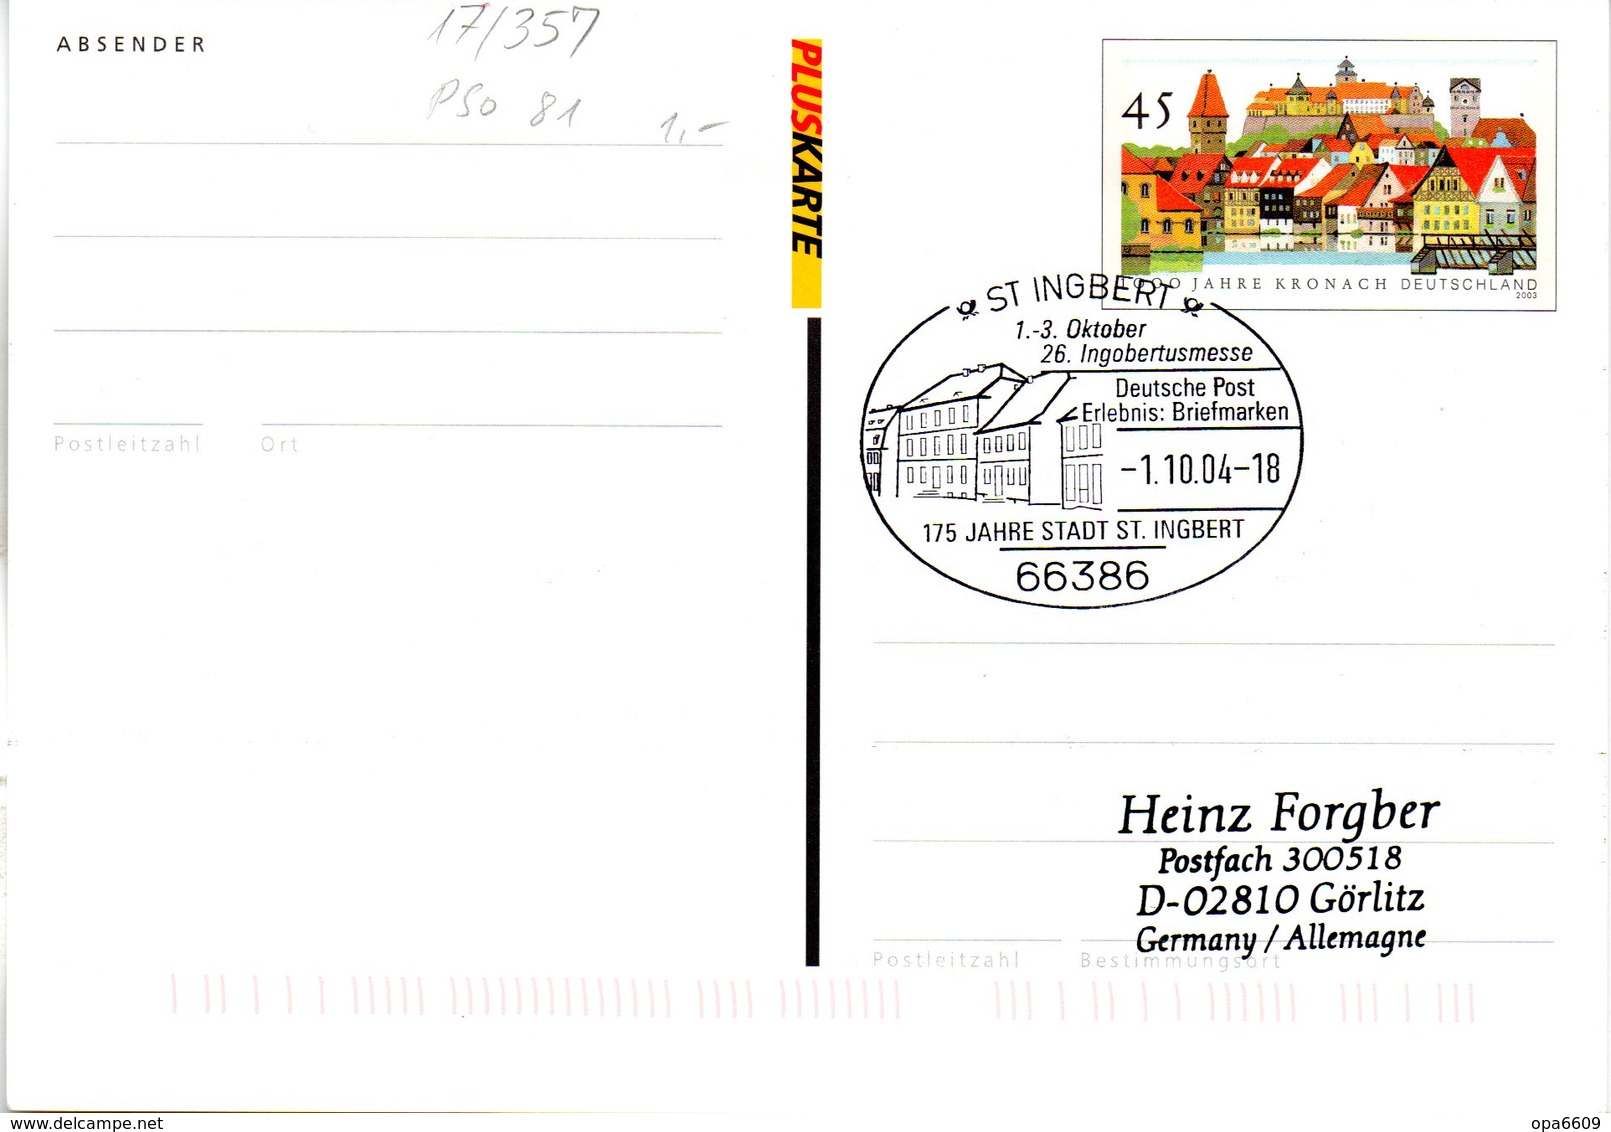 BRD Amtliche Ganzsachen-Postk. PSo 81a PLUSKARTE WSt.45(C) "100 Jahre Kronach" SSt 1.10.2004 ST INGBERT - Postkarten - Gebraucht